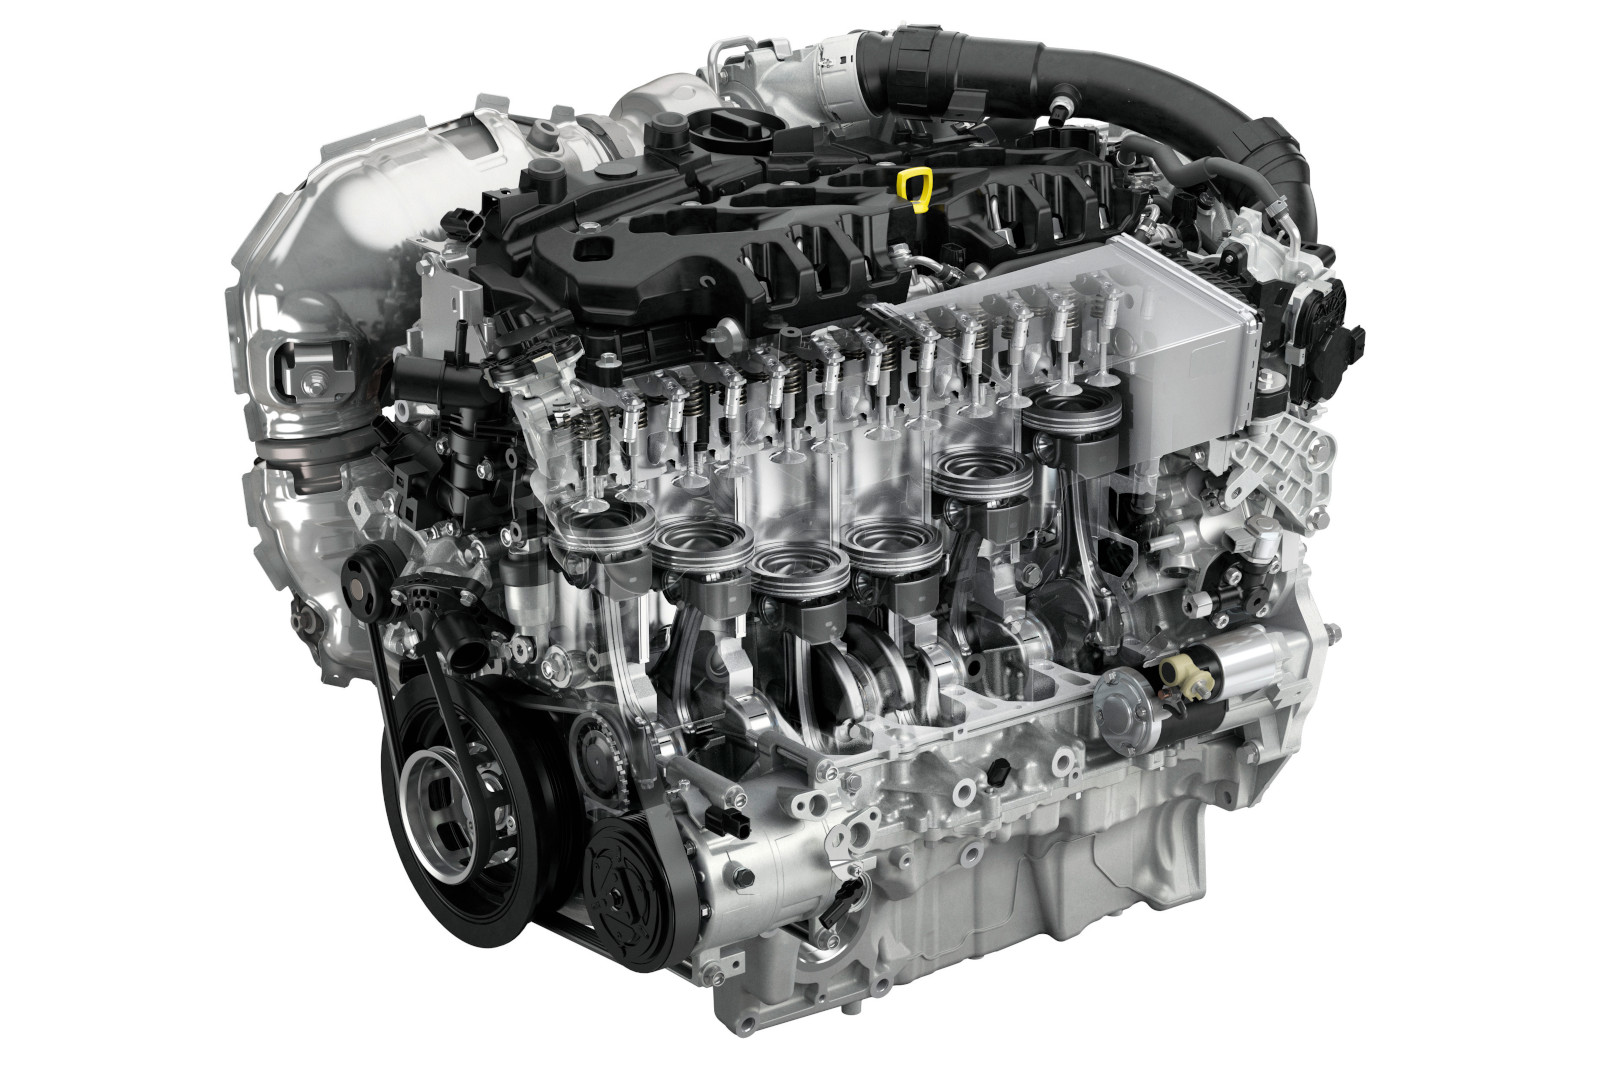 Under the skin: Mazda's diesel lifeline through innovative new